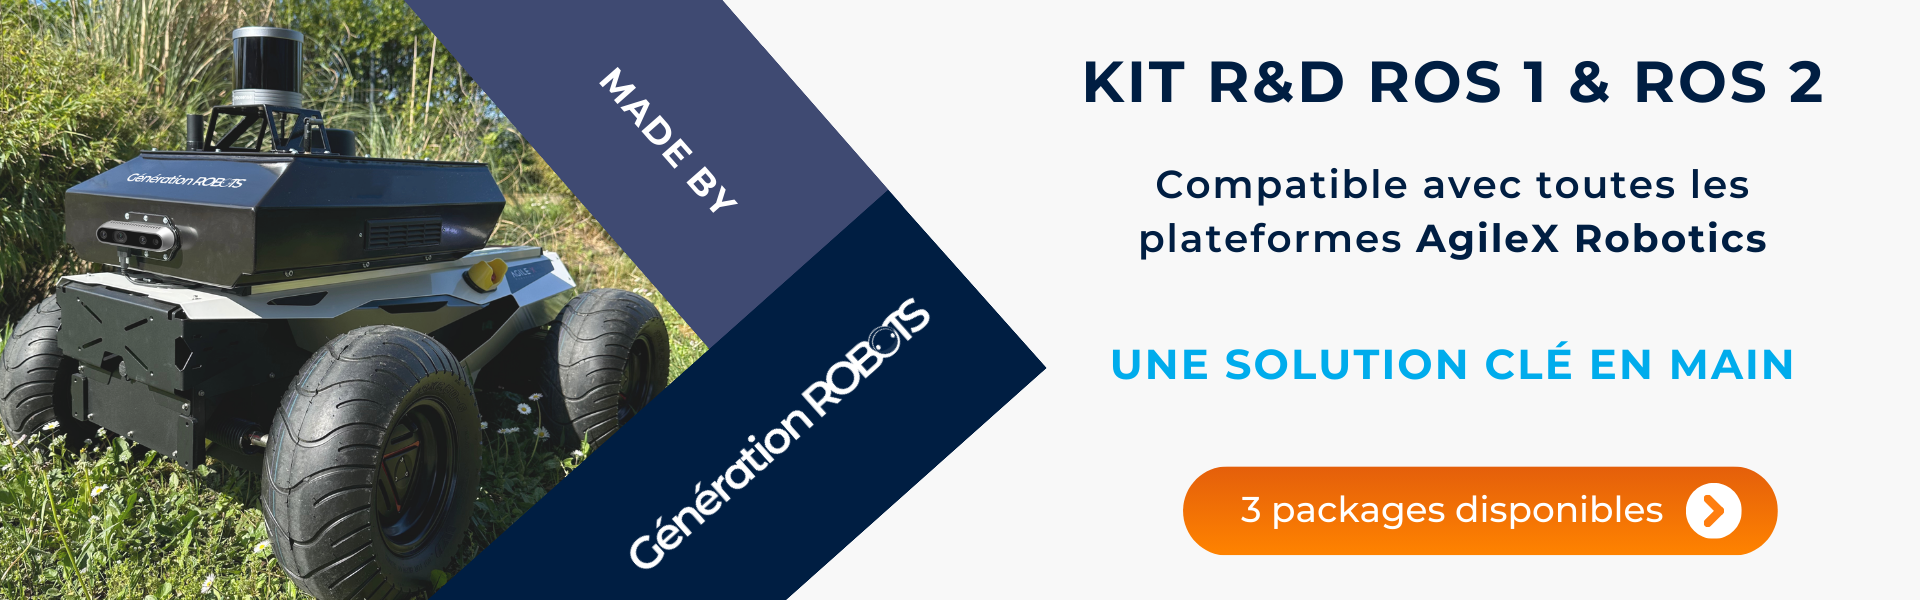 Kit R&D ROS 1 & ROS 2 | Compatible avec toutes les plateformes AgileX Robotics